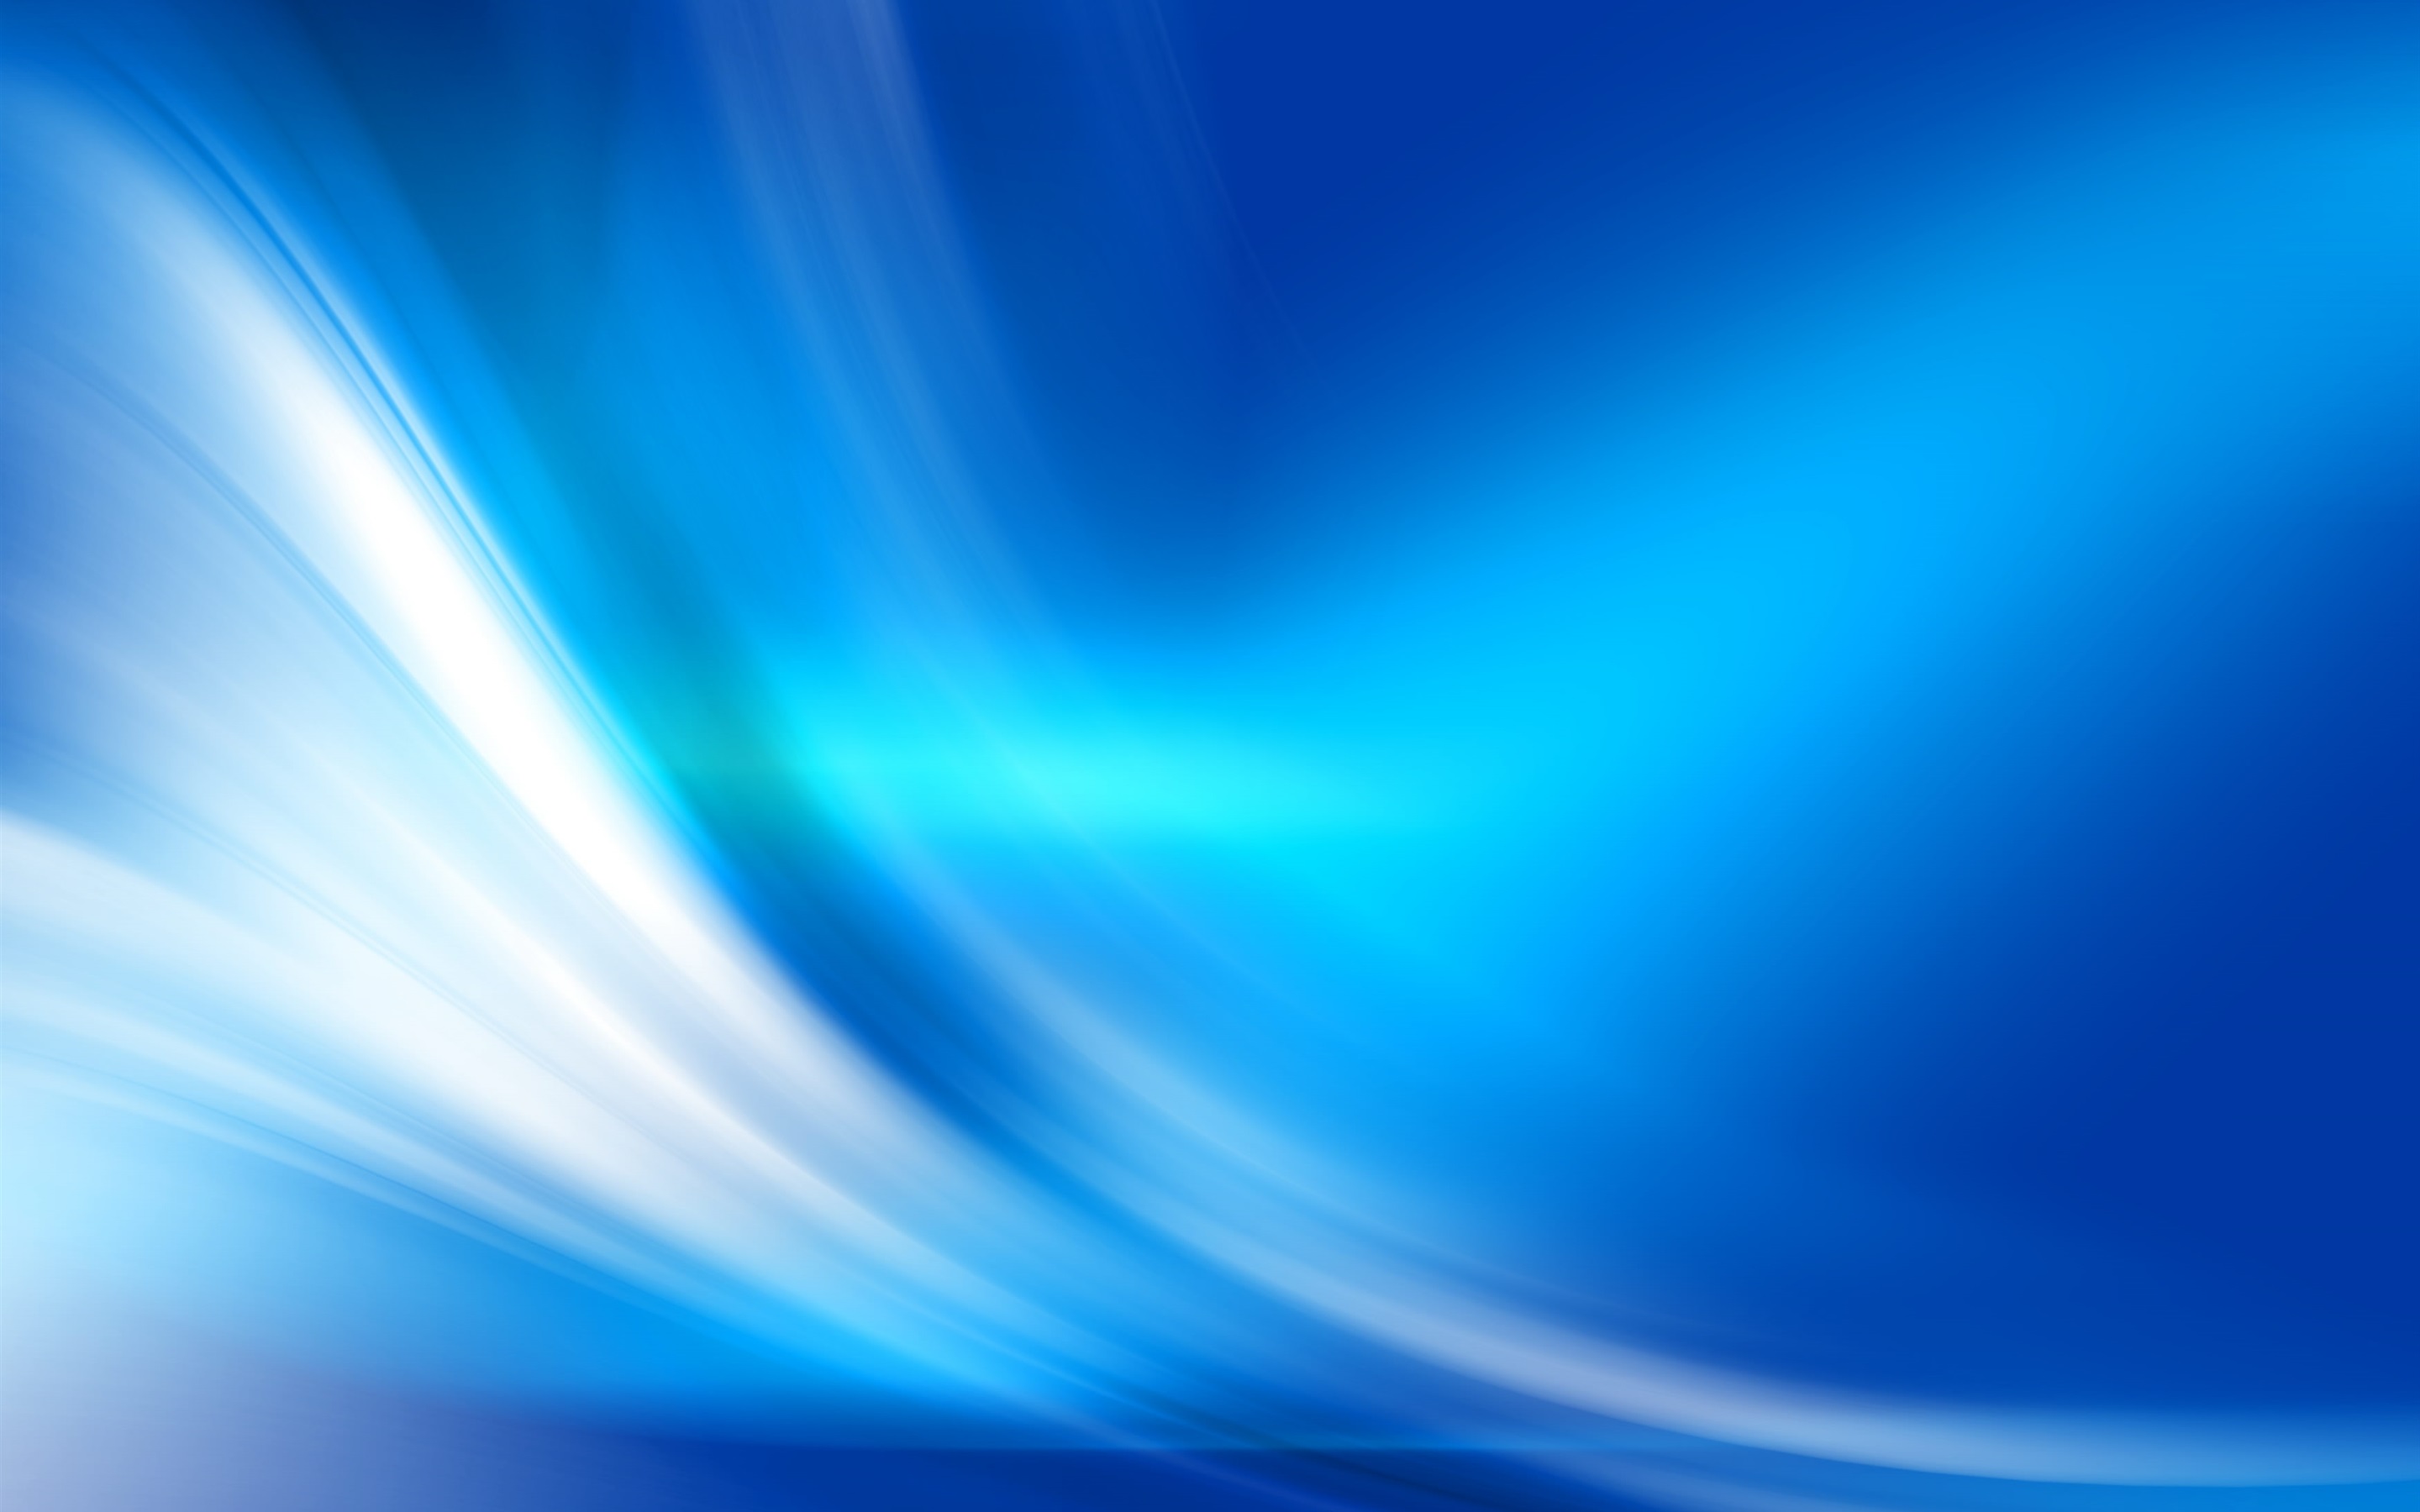 윈도우 10 배경 화면 다운로드,푸른,아쿠아,빛,강청색,하늘